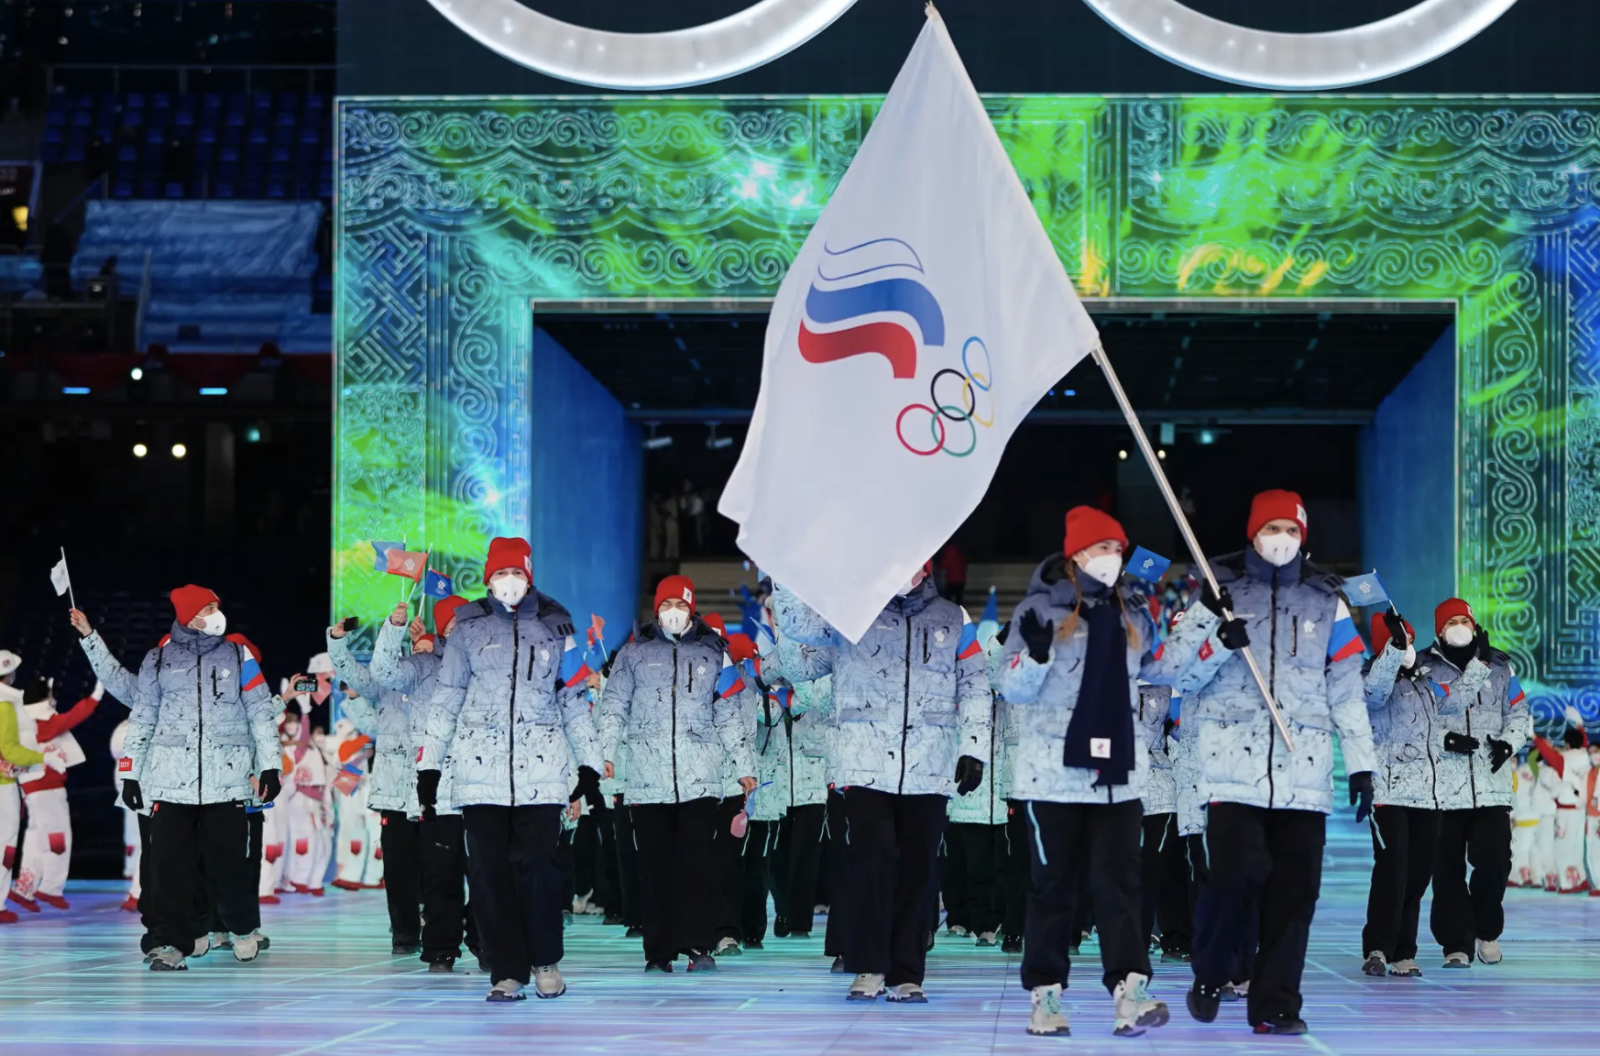 Cấm quốc kỳ Nga - Hãy cùng xem hình ảnh các vận động viên Nga thi đấu với tinh thần quyết tâm và lòng yêu nước mãnh liệt. Trong bước đi với “cờ trắng xanh”, họ đã cố gắng vượt qua mọi giới hạn và chứng tỏ tình yêu thương của mình đối với đất nước.